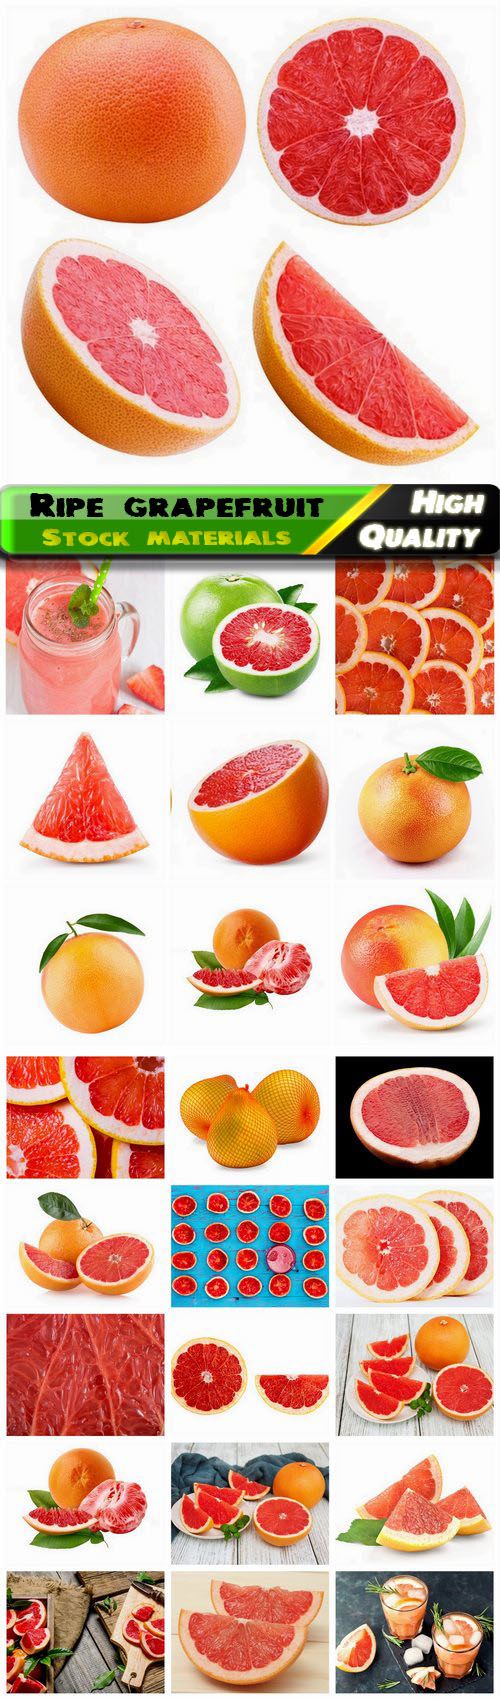 Red and orange grapefruit subtropical citrus fruit 25 HQ Jpg